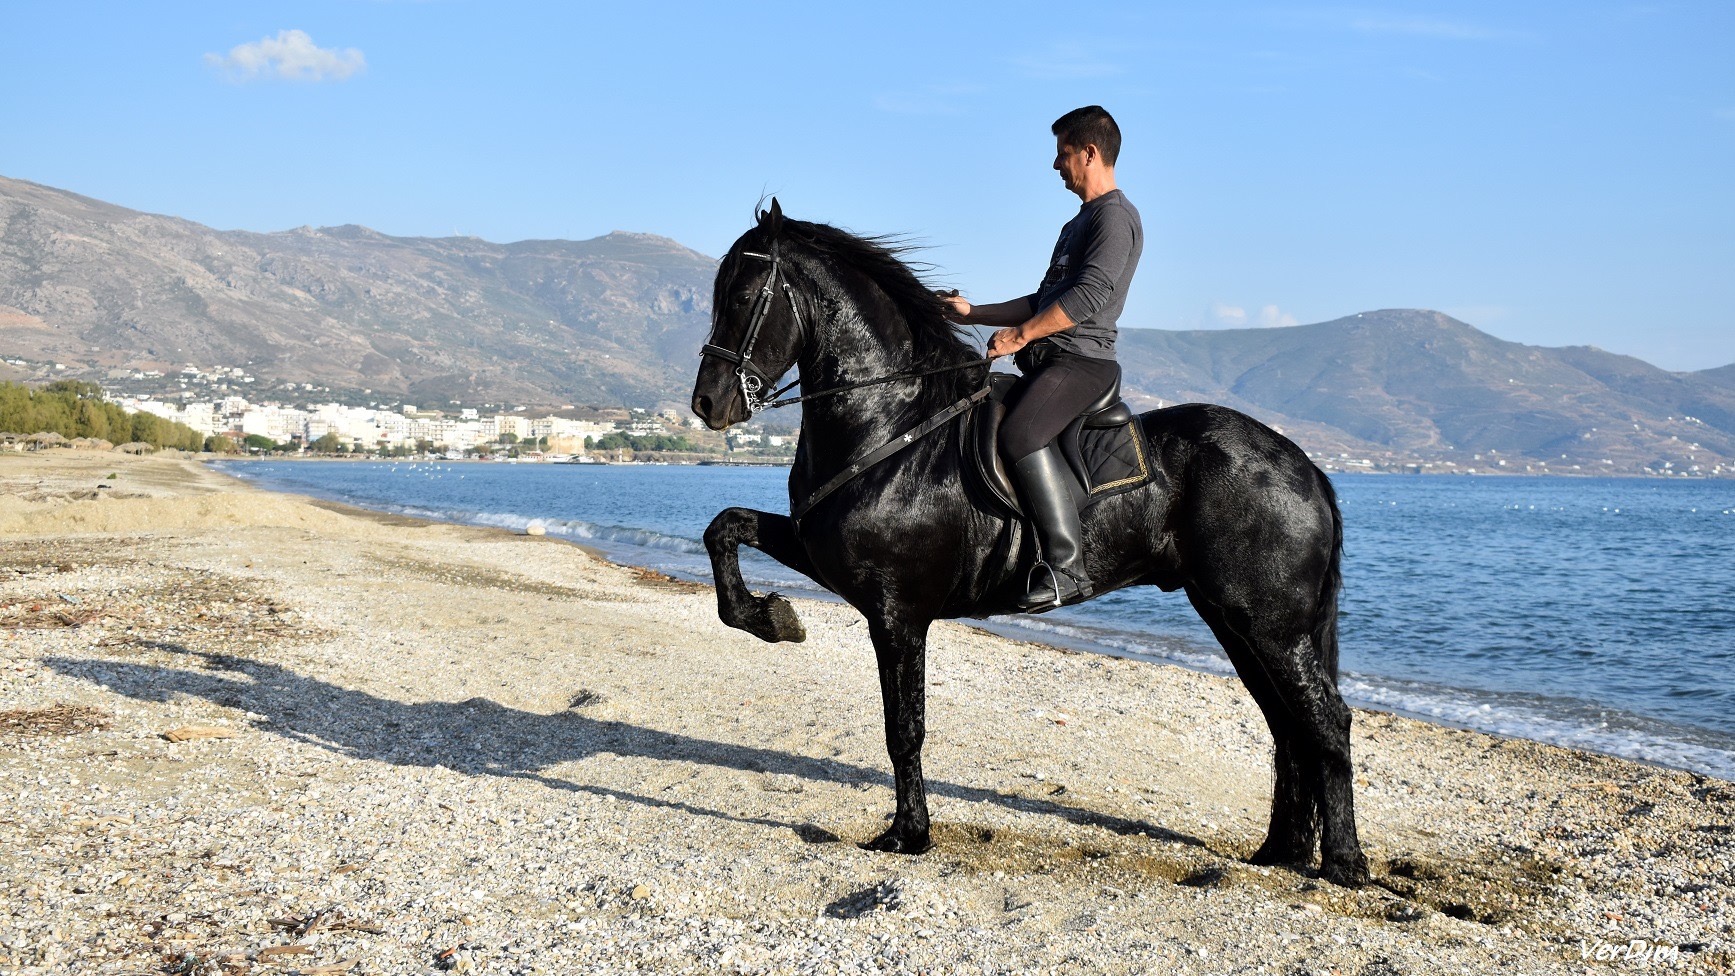 Σε αυτή την παραλία της Εύβοιας θα συναντήσεις αυτό το άλογο!